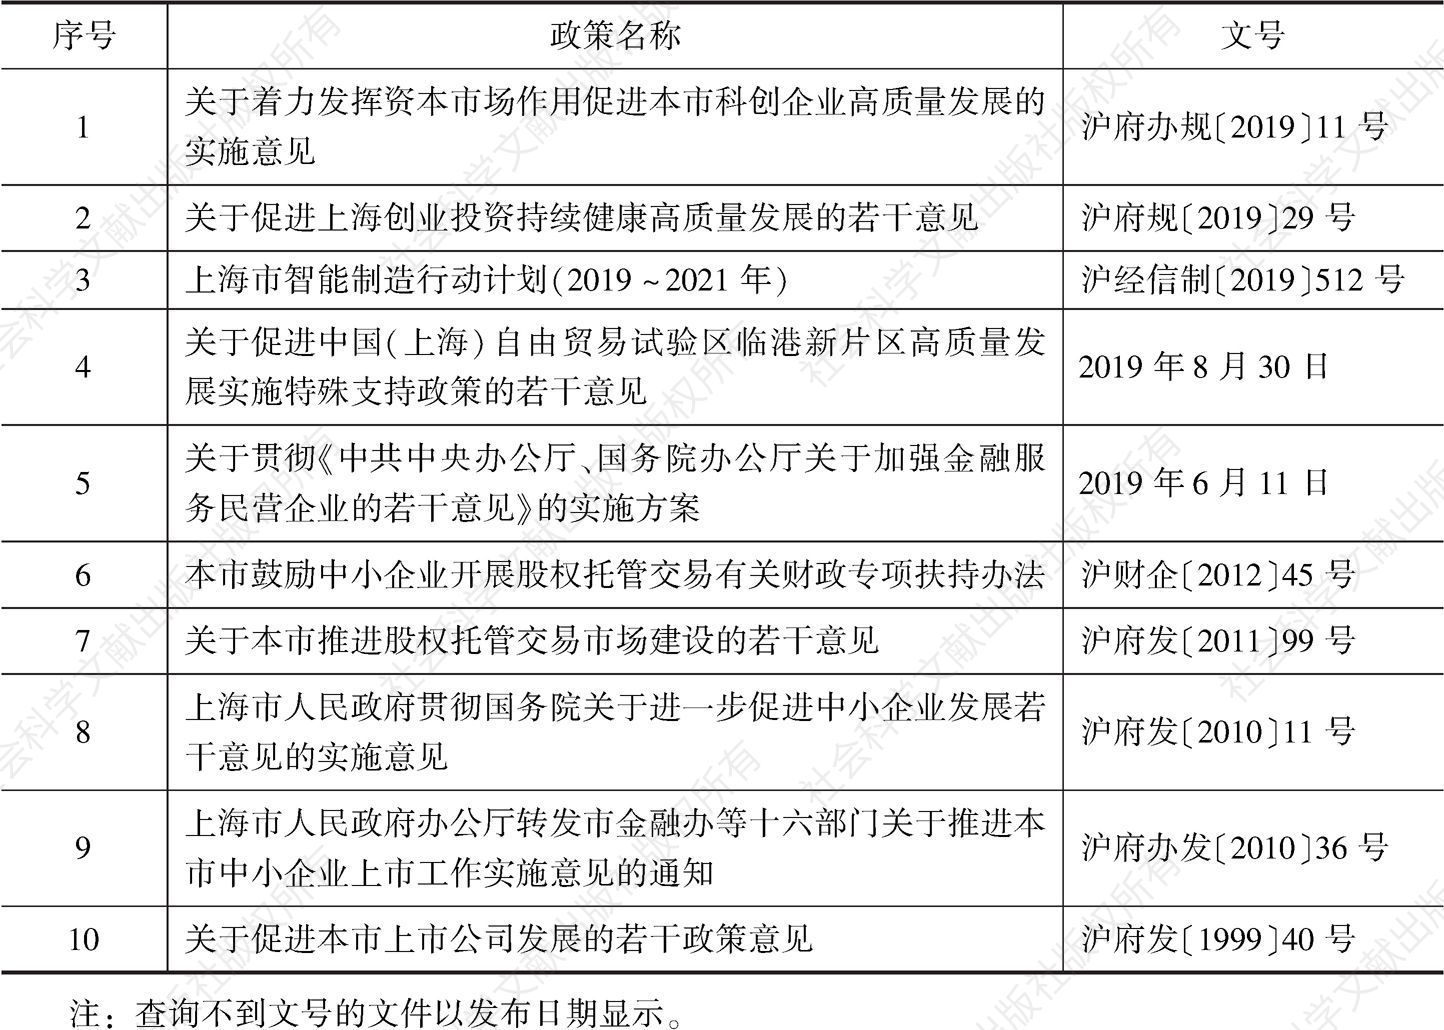 附件1 上海支持企业上市政策文件